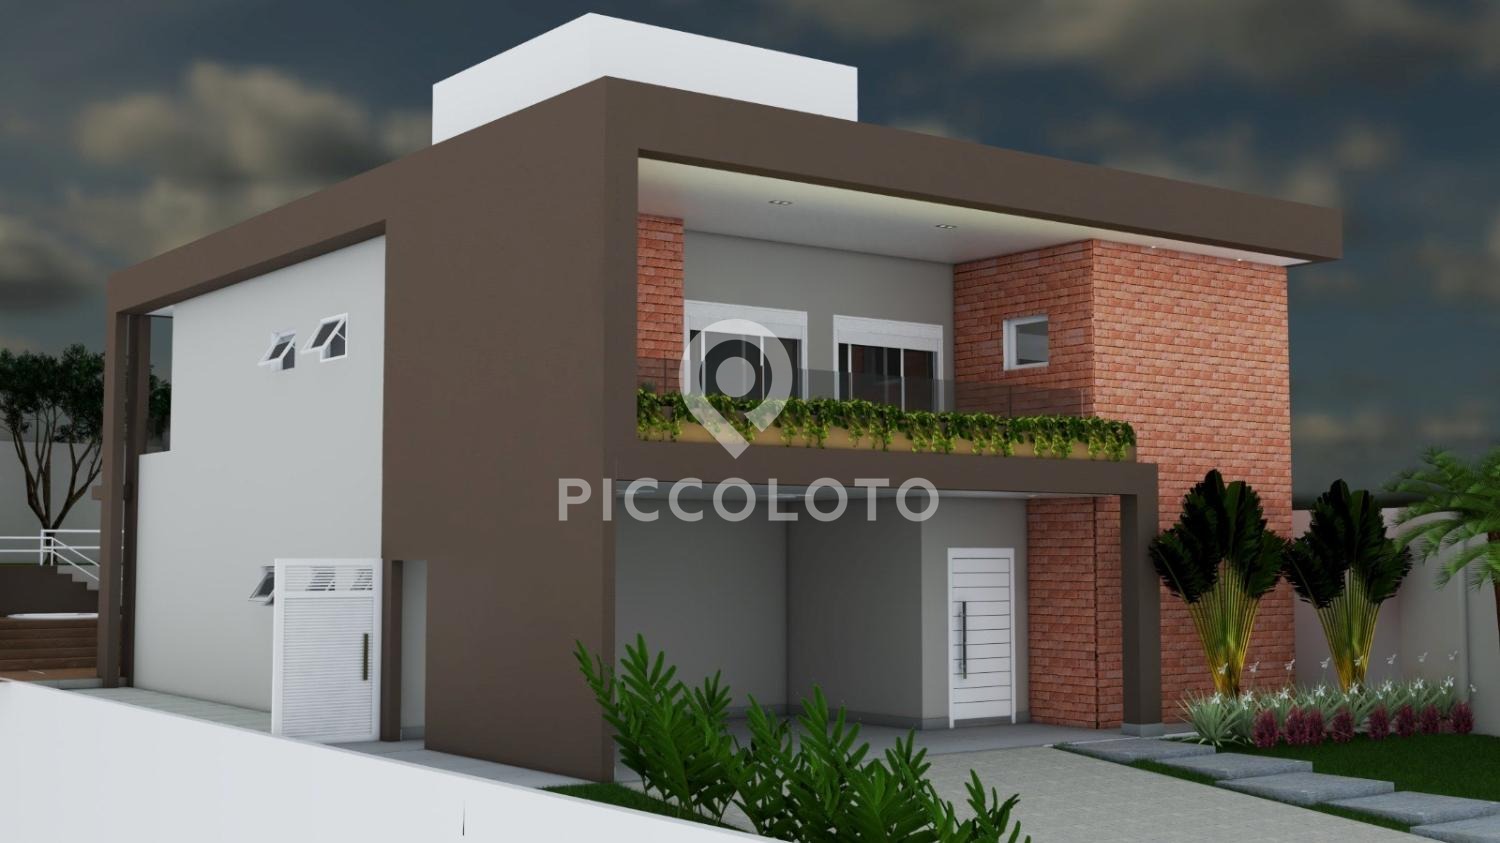 Piccoloto - Casa à venda no Loteamento Parque dos Alecrins em Campinas